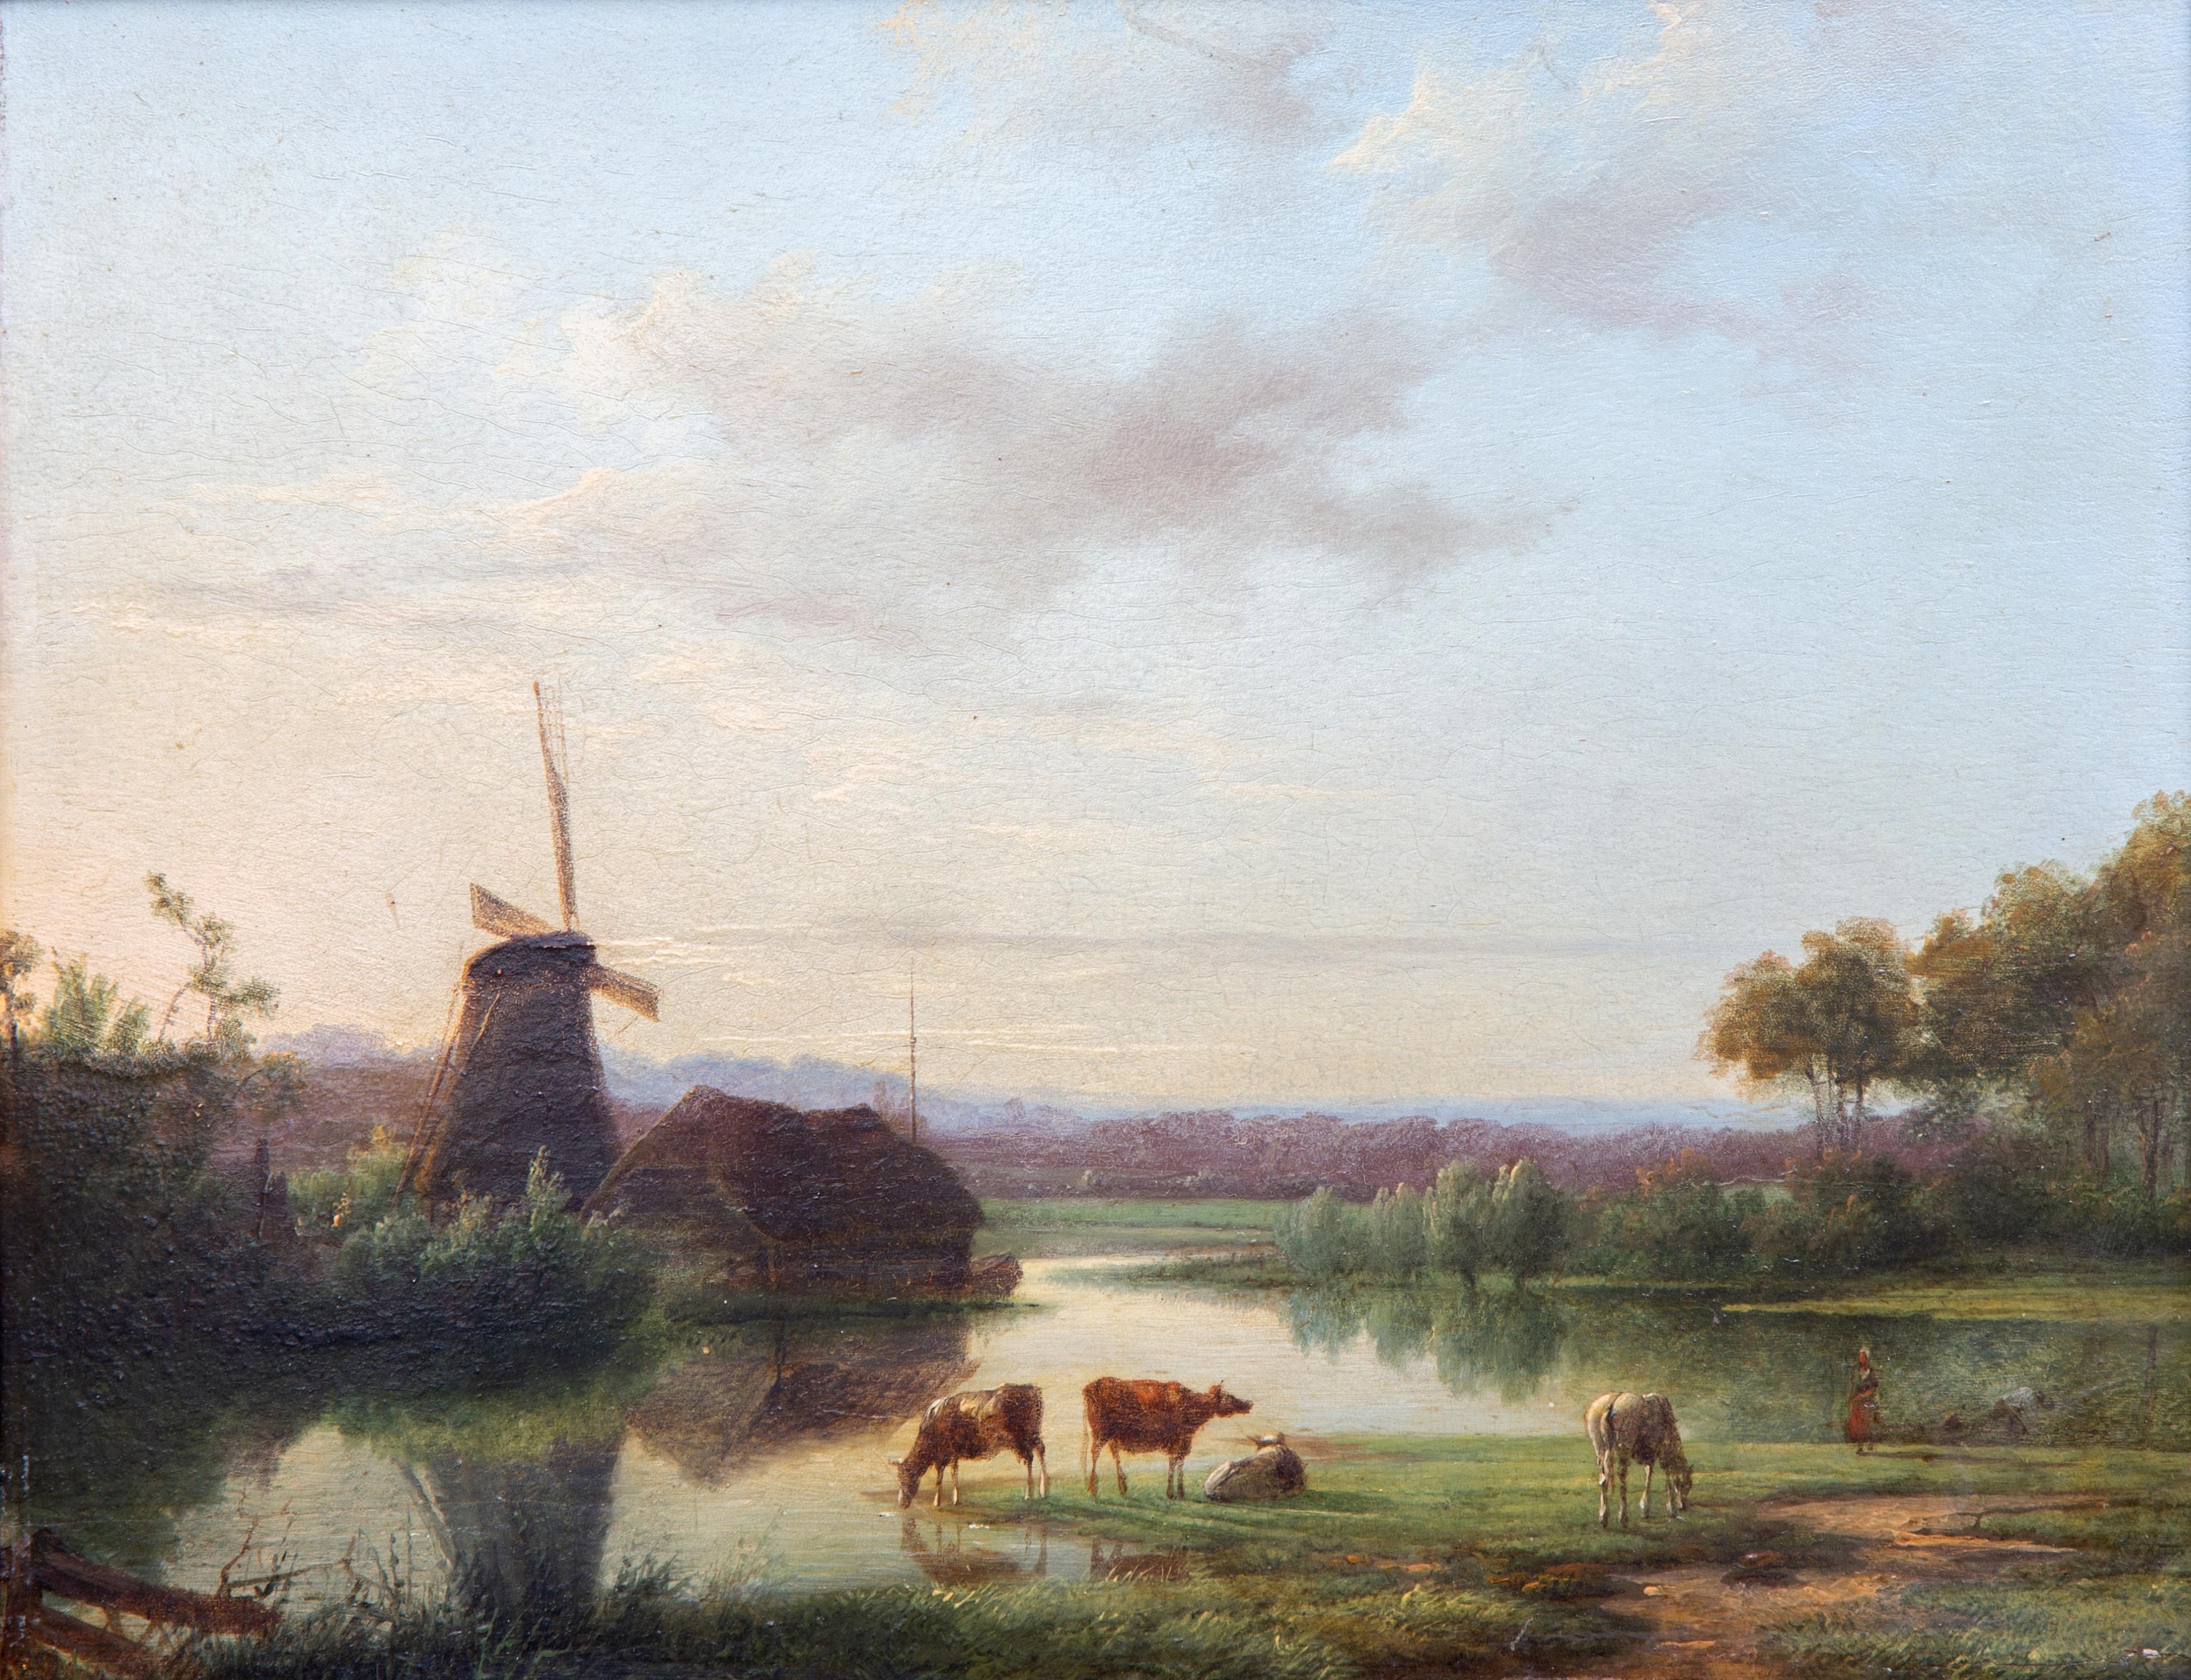 Cattle watering near a windmill